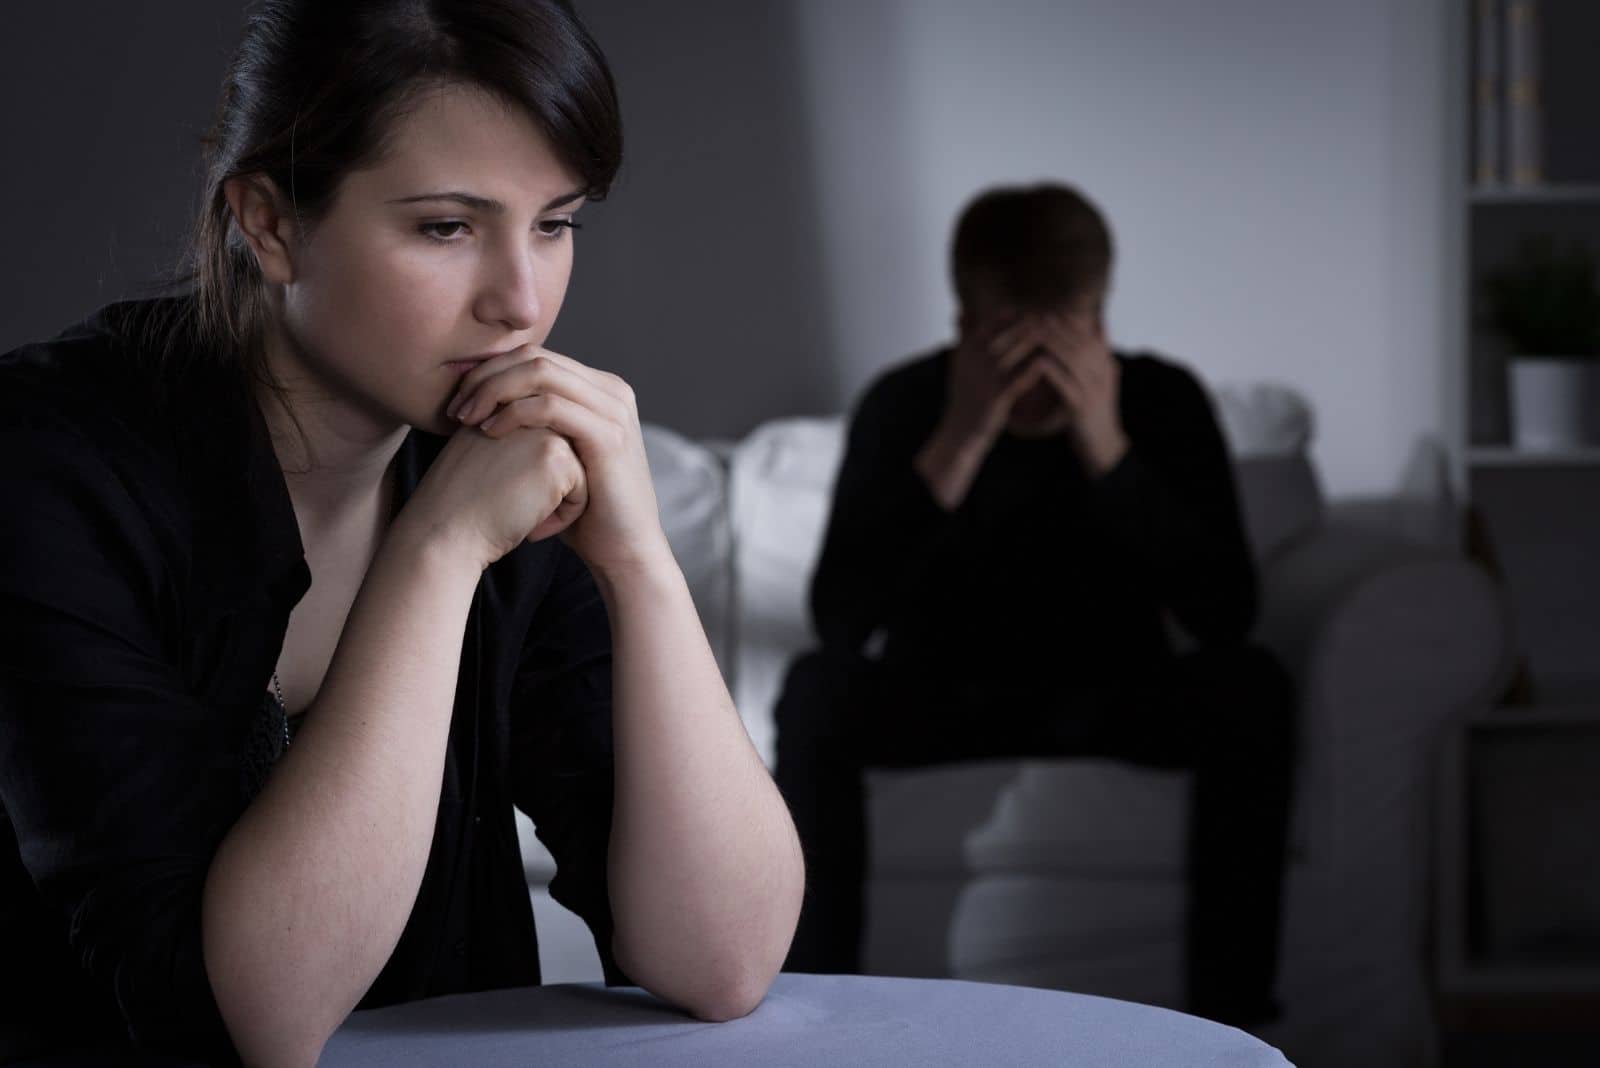 Femme mariée inquiète prenant une décision sur le divorce